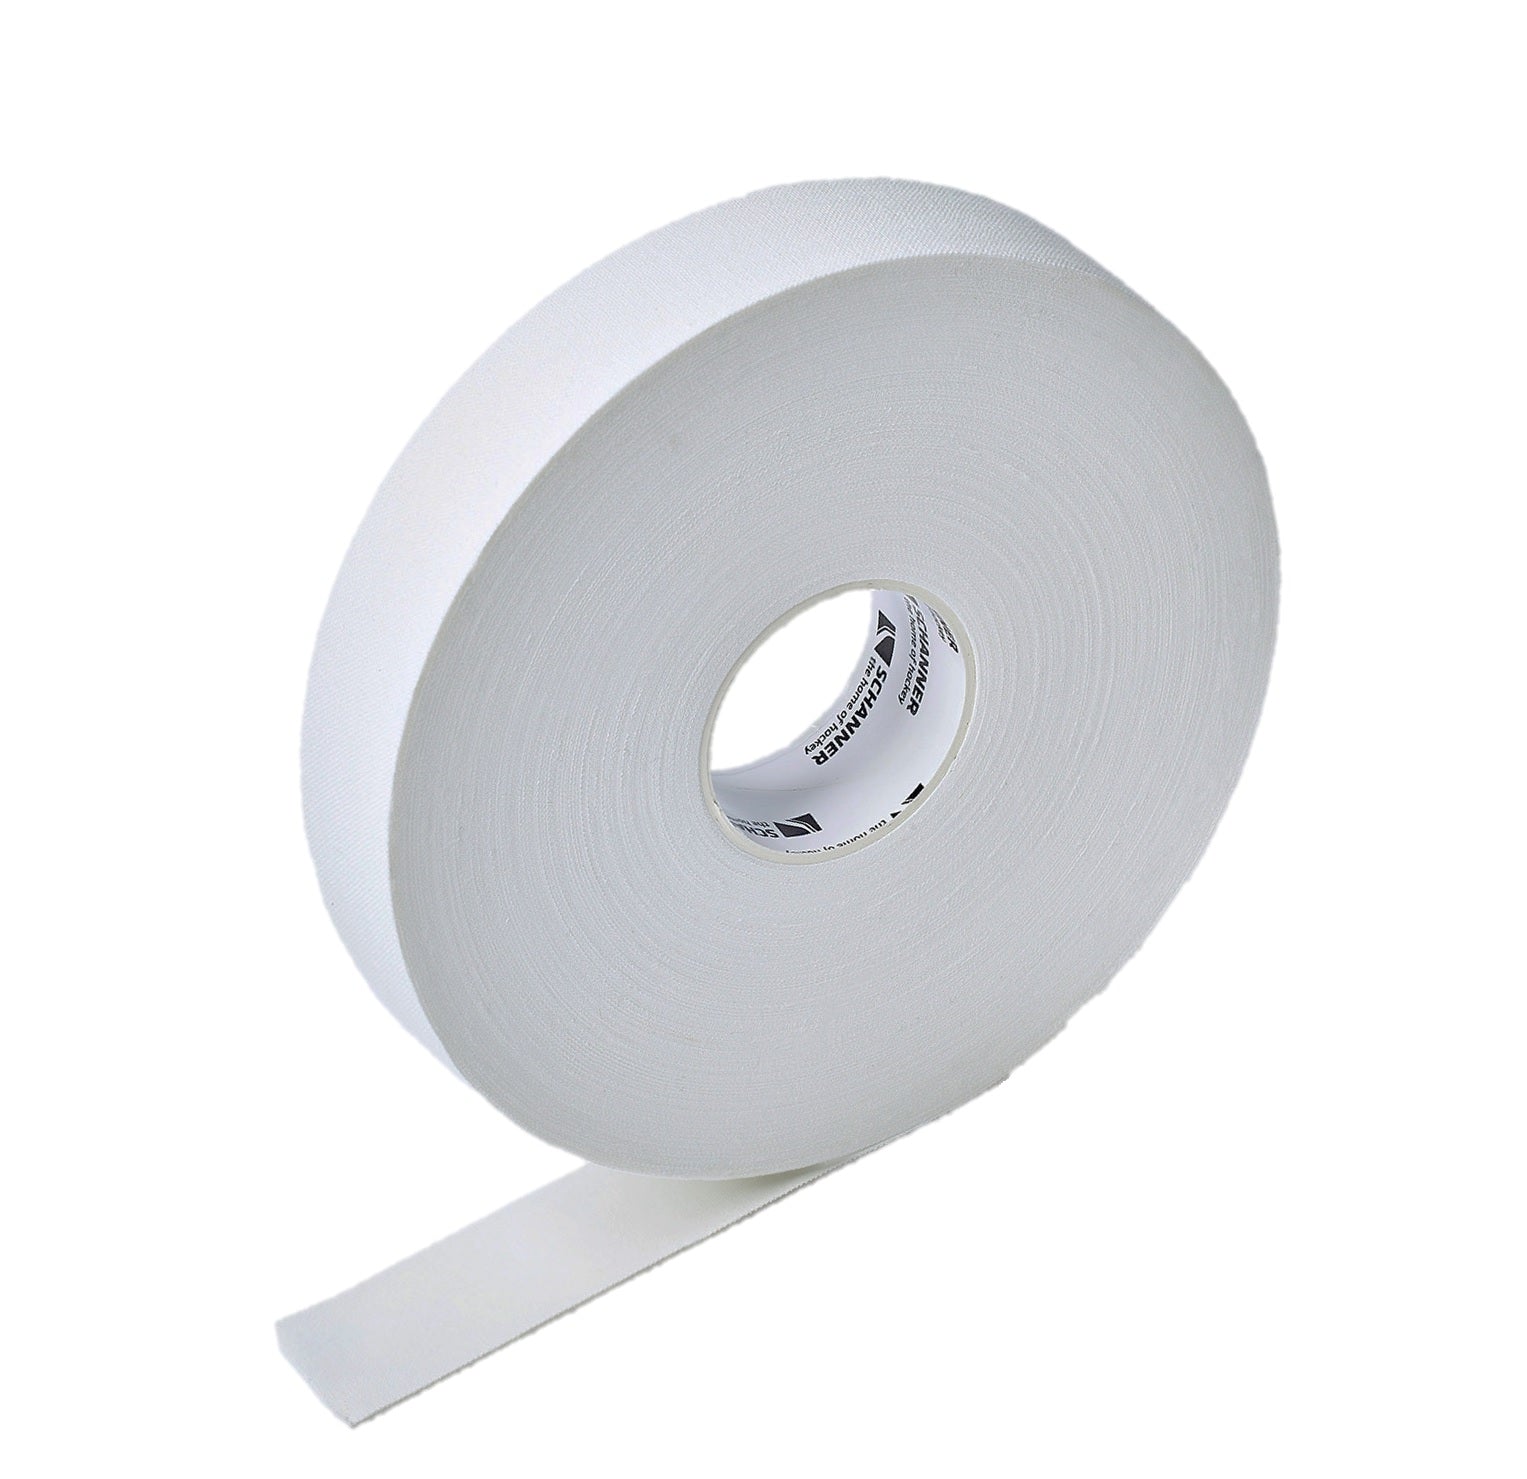 Eishockey Tape Schanner cloth Schlägertape 25mm x 50m weiß